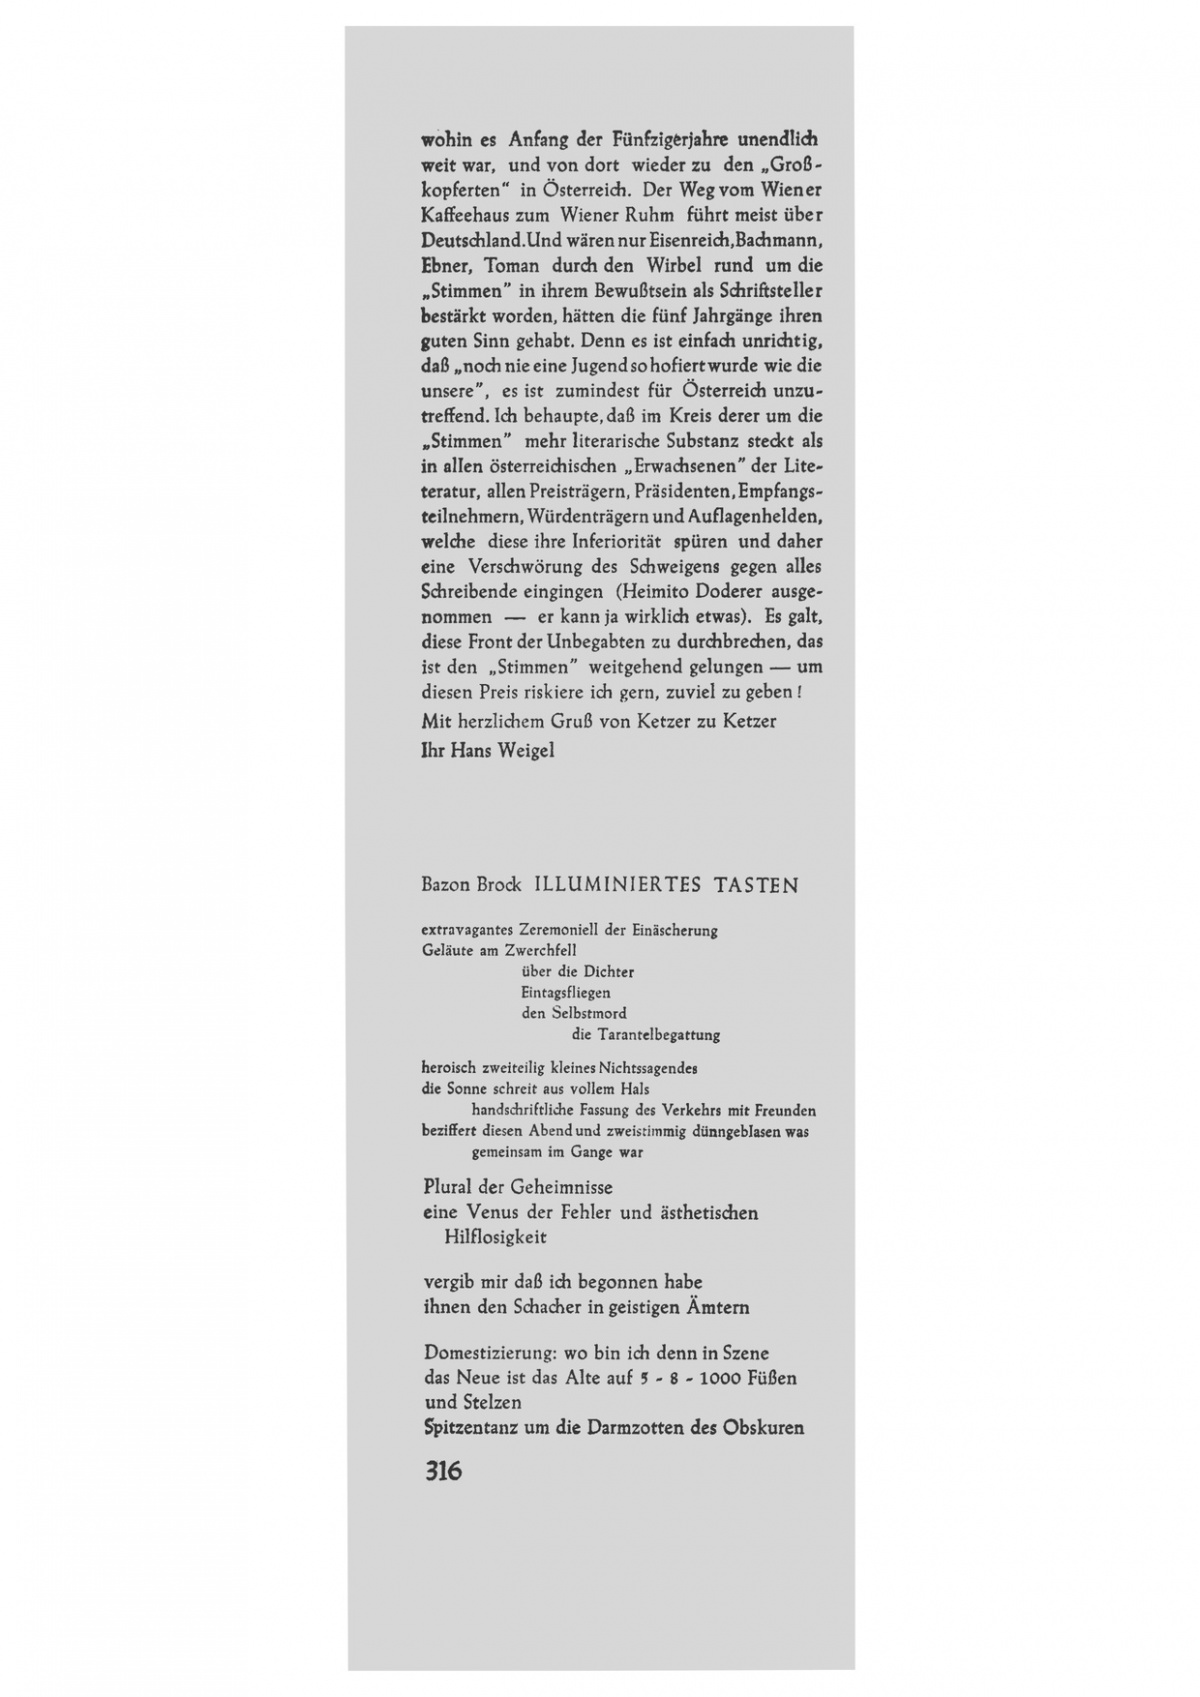 Streit-Zeit-Schrift 1/1958, Bild: Illuminiertes Tasten, 1/2.